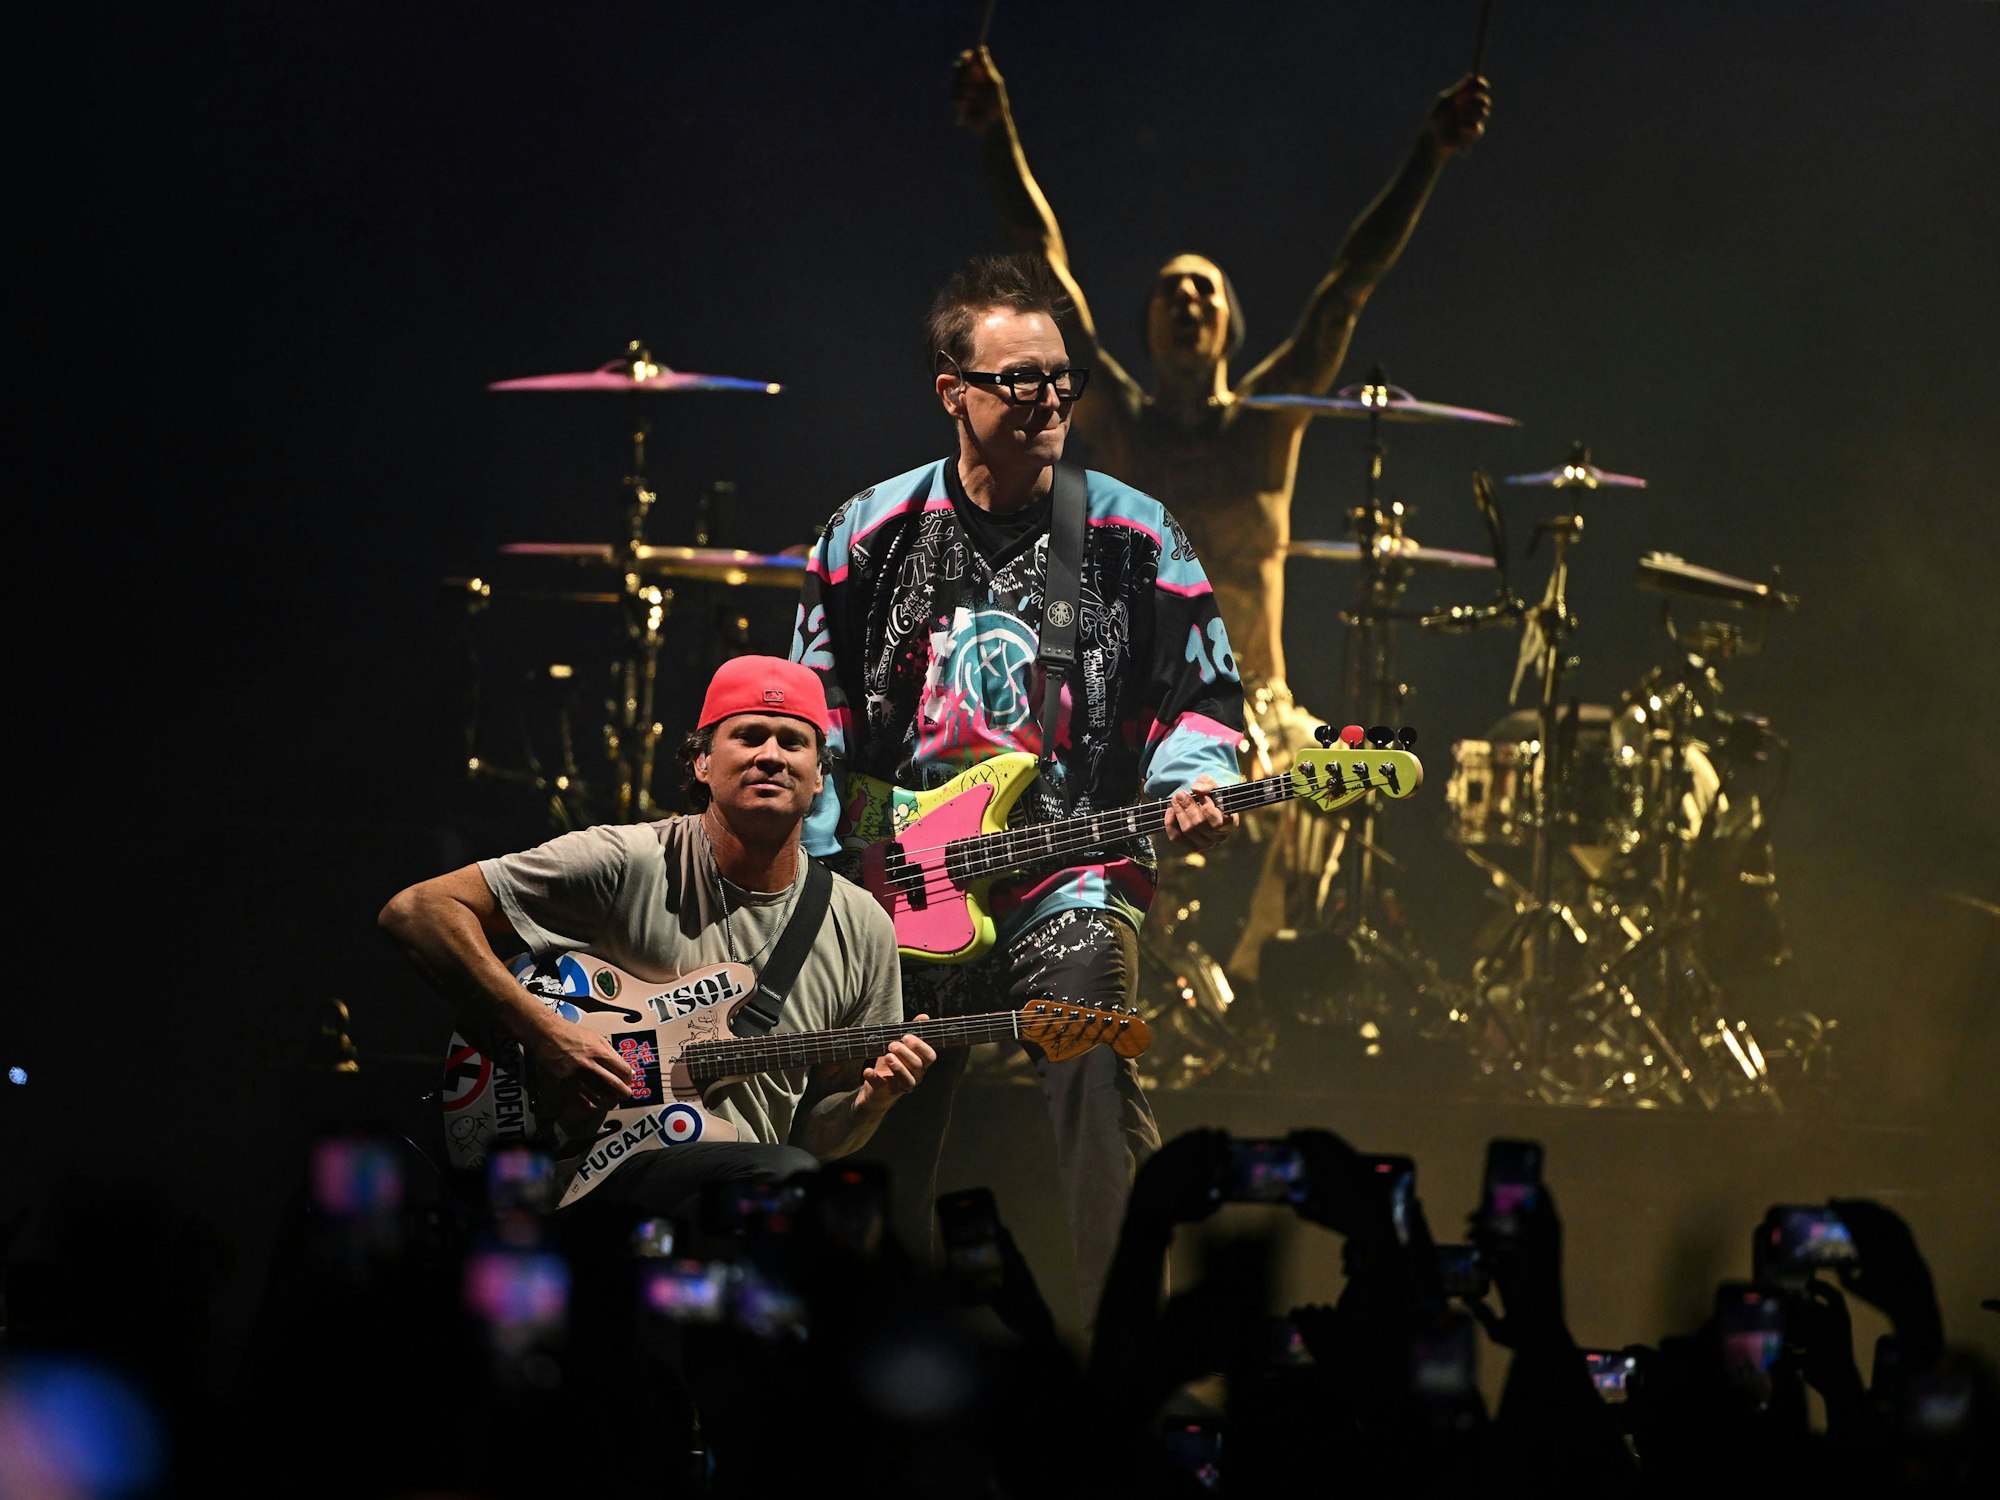 Die Band Blink-182 performt auf einem Konzert.